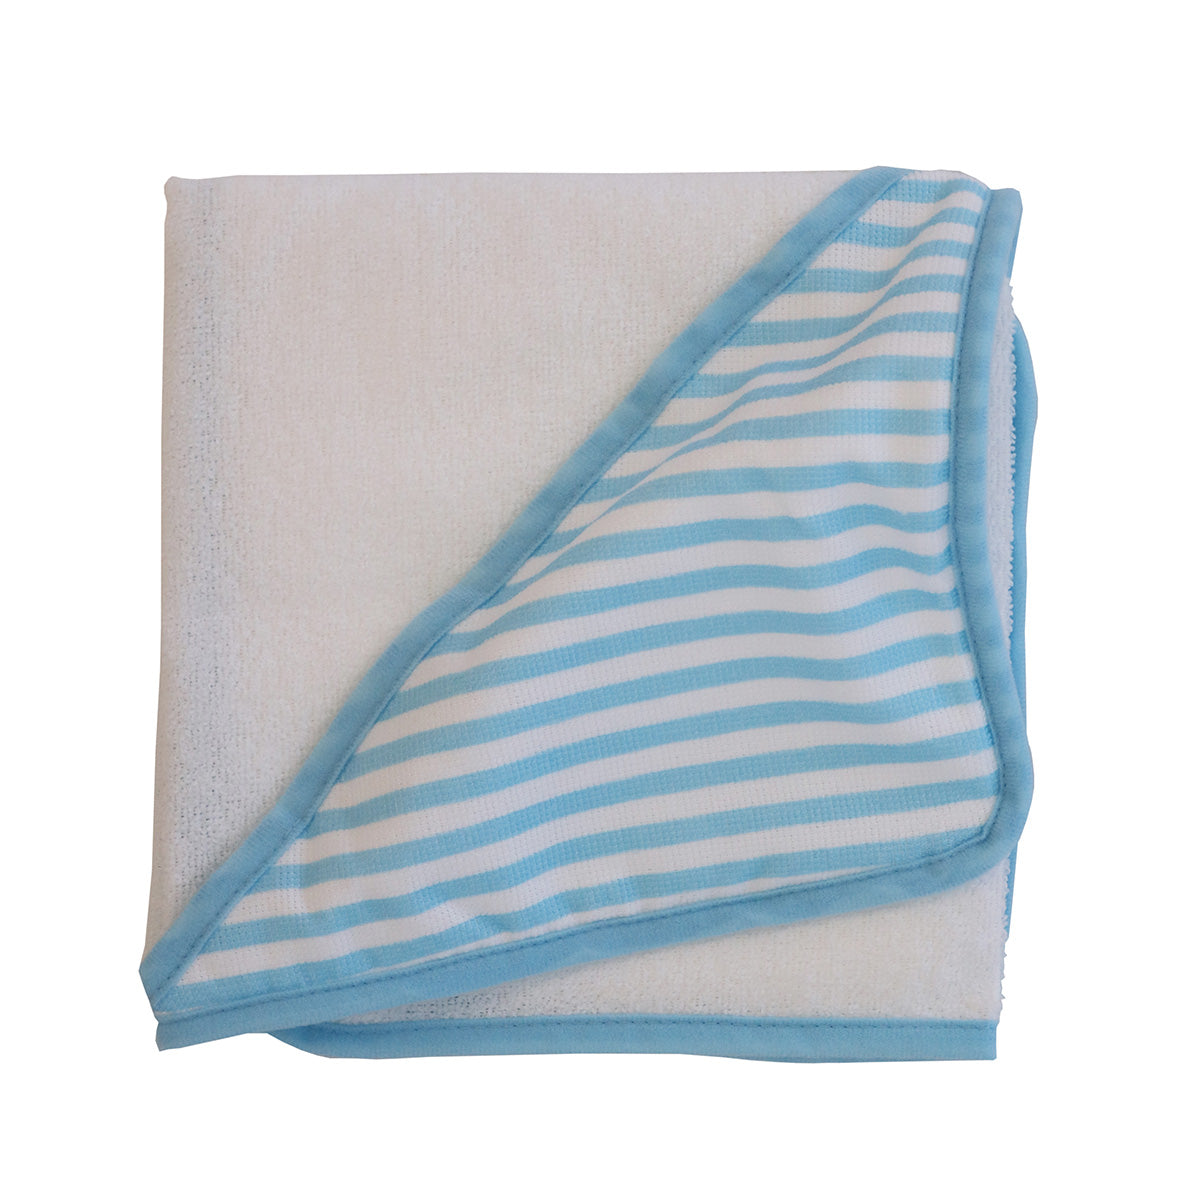 Snuggletime Super Soft Hooded Towel